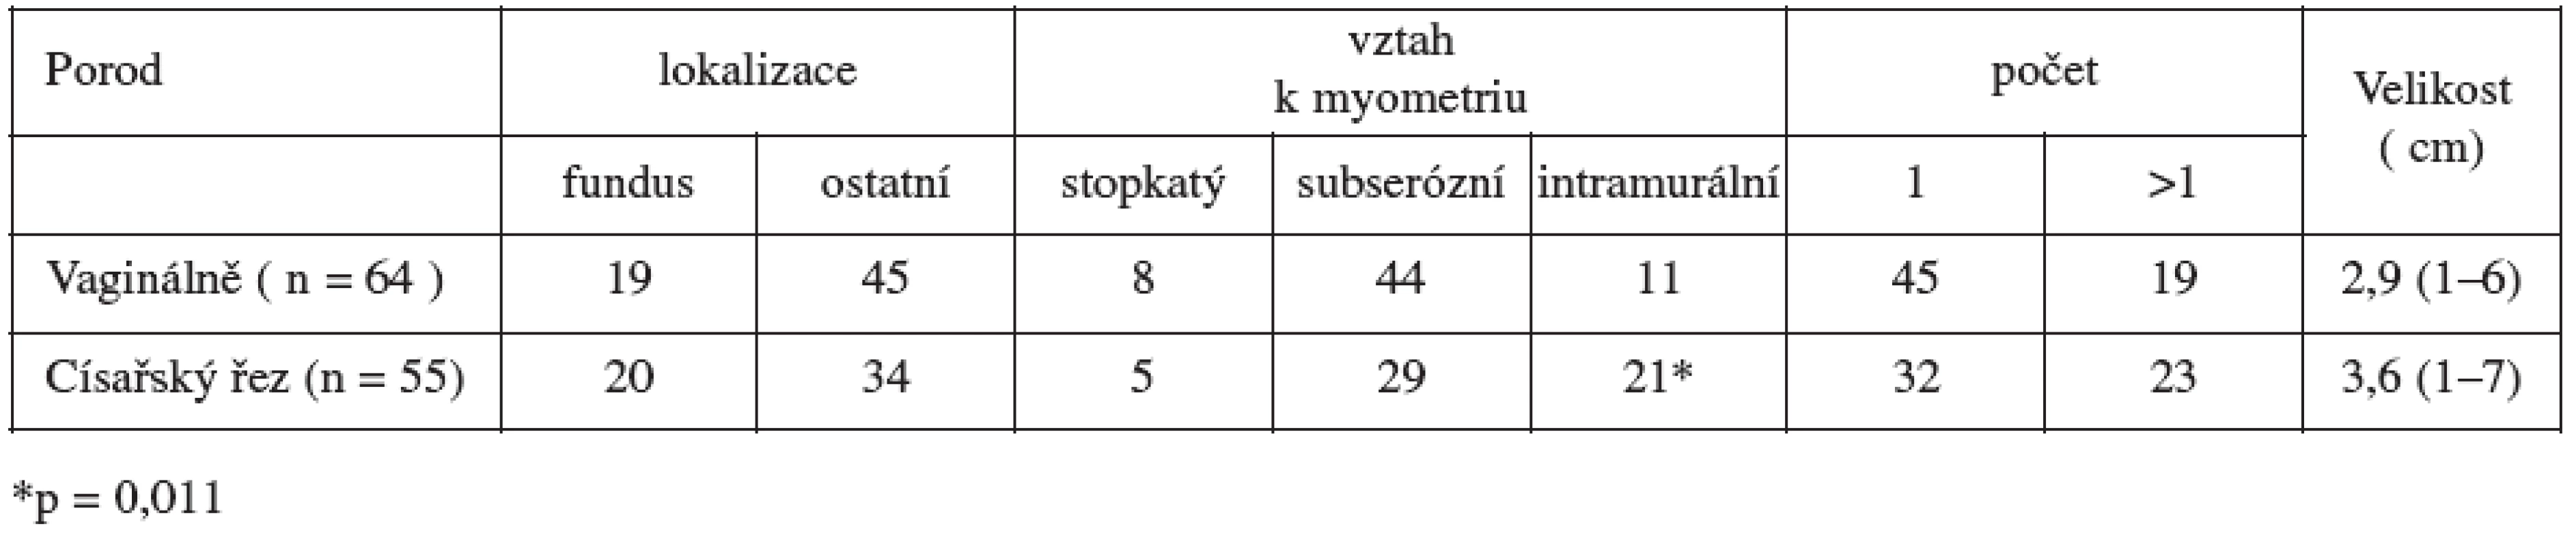 Lokalizace, vztah k myometriu, průměrná velikost a počet leiomyomů ve vztahu s vedením porodu ( n = 119 )